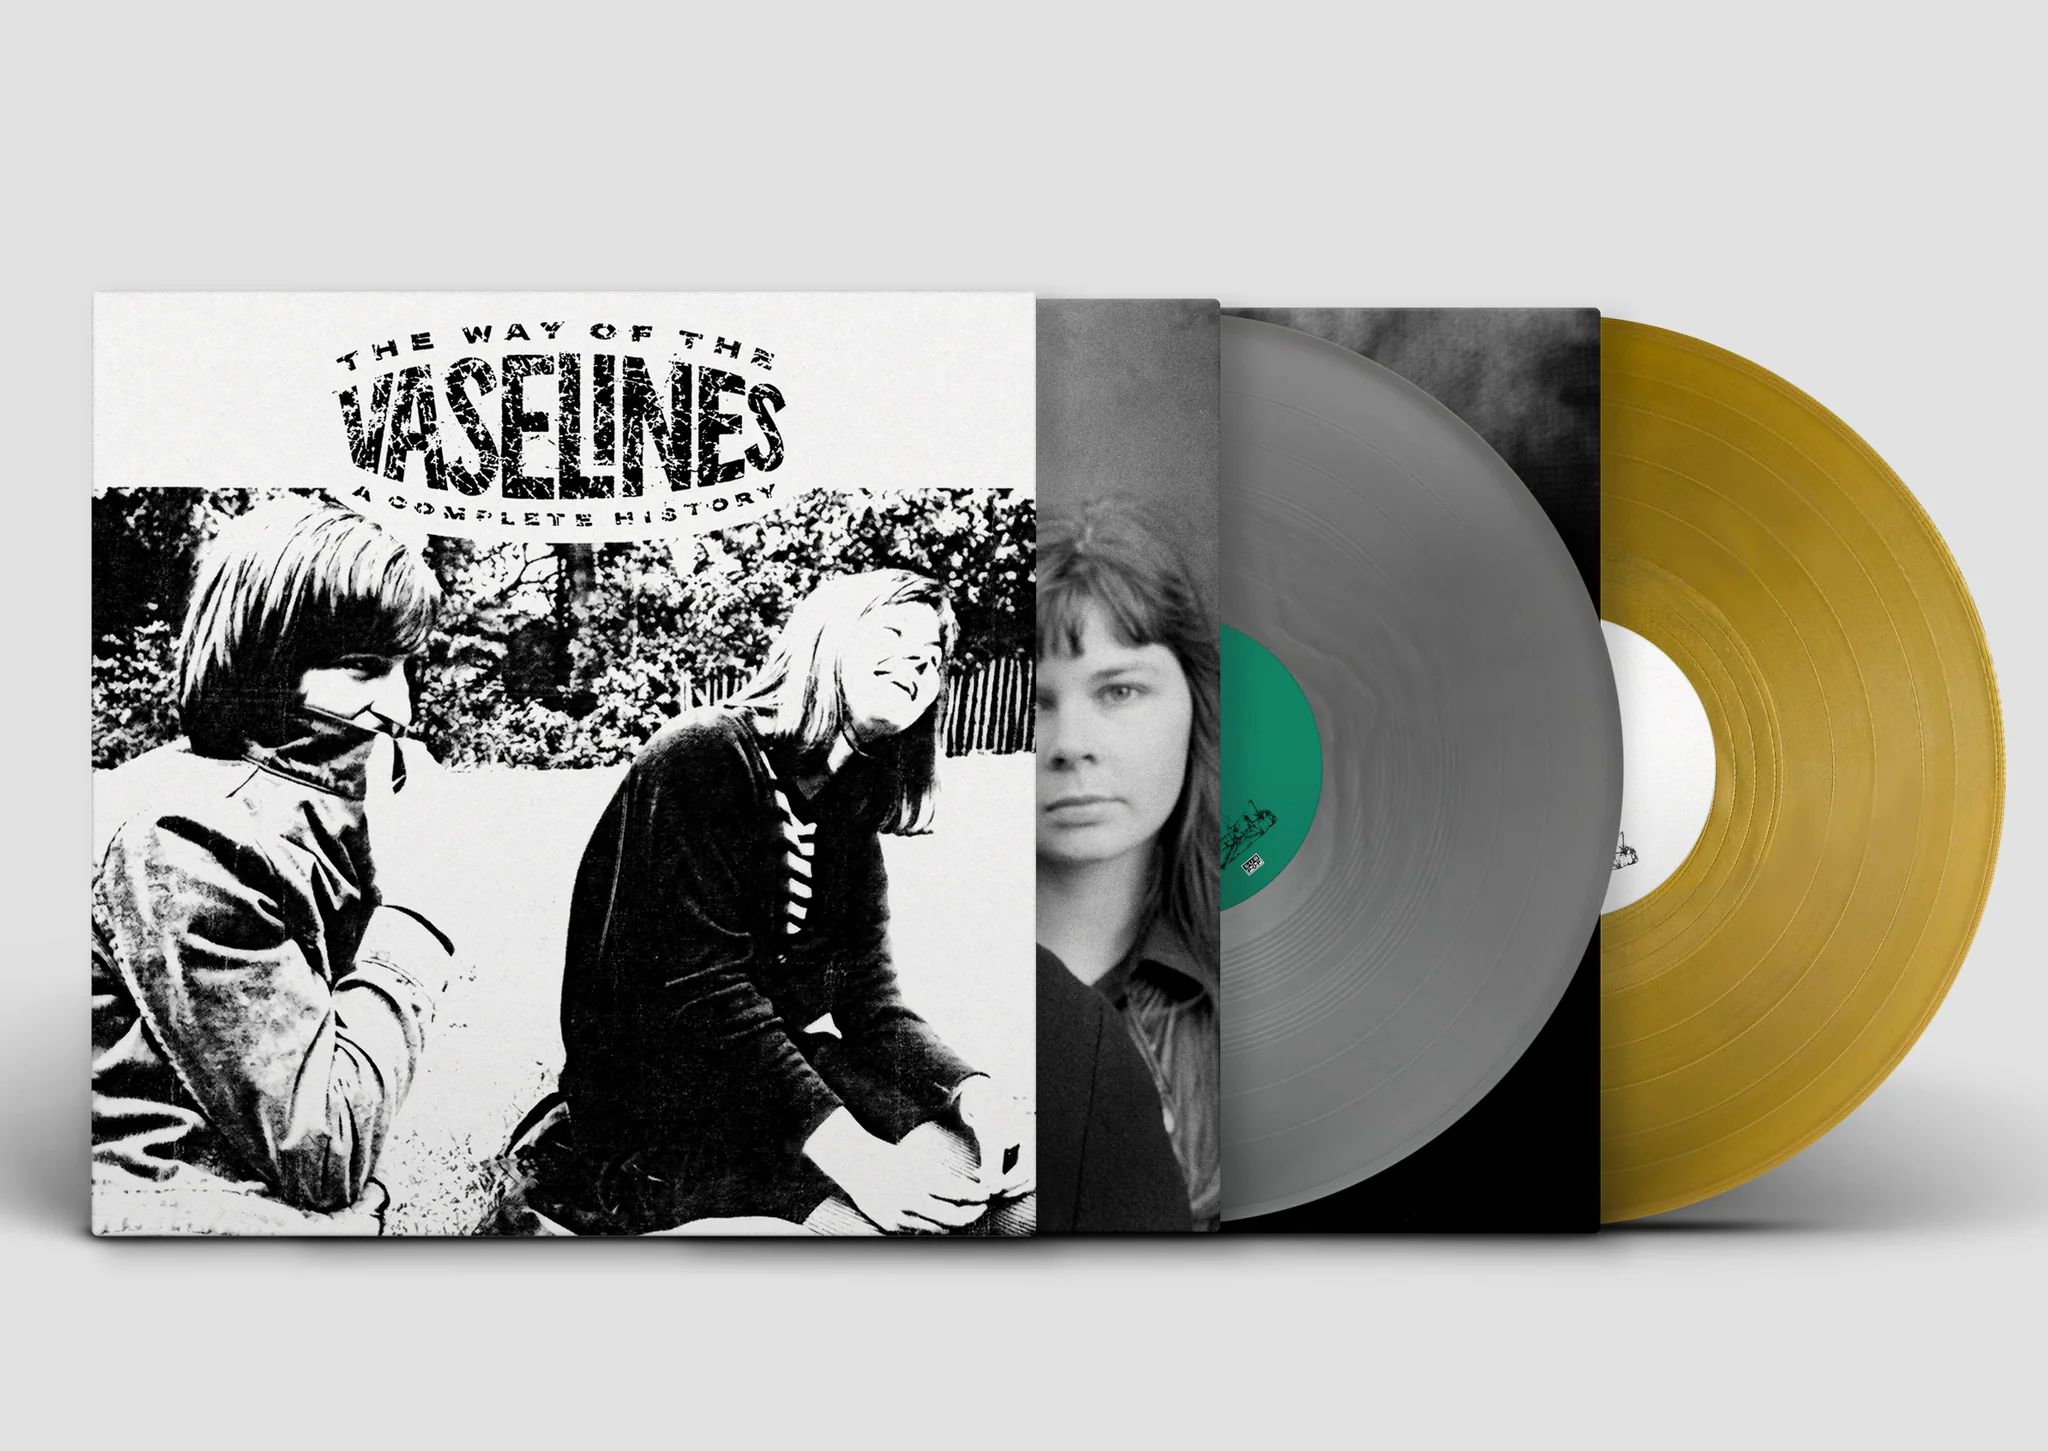 【店舗情報】9/12(火) VASELINES 《カラー盤LPが入荷》92年に発売されたベストがリマスター仕様で初アナログ化